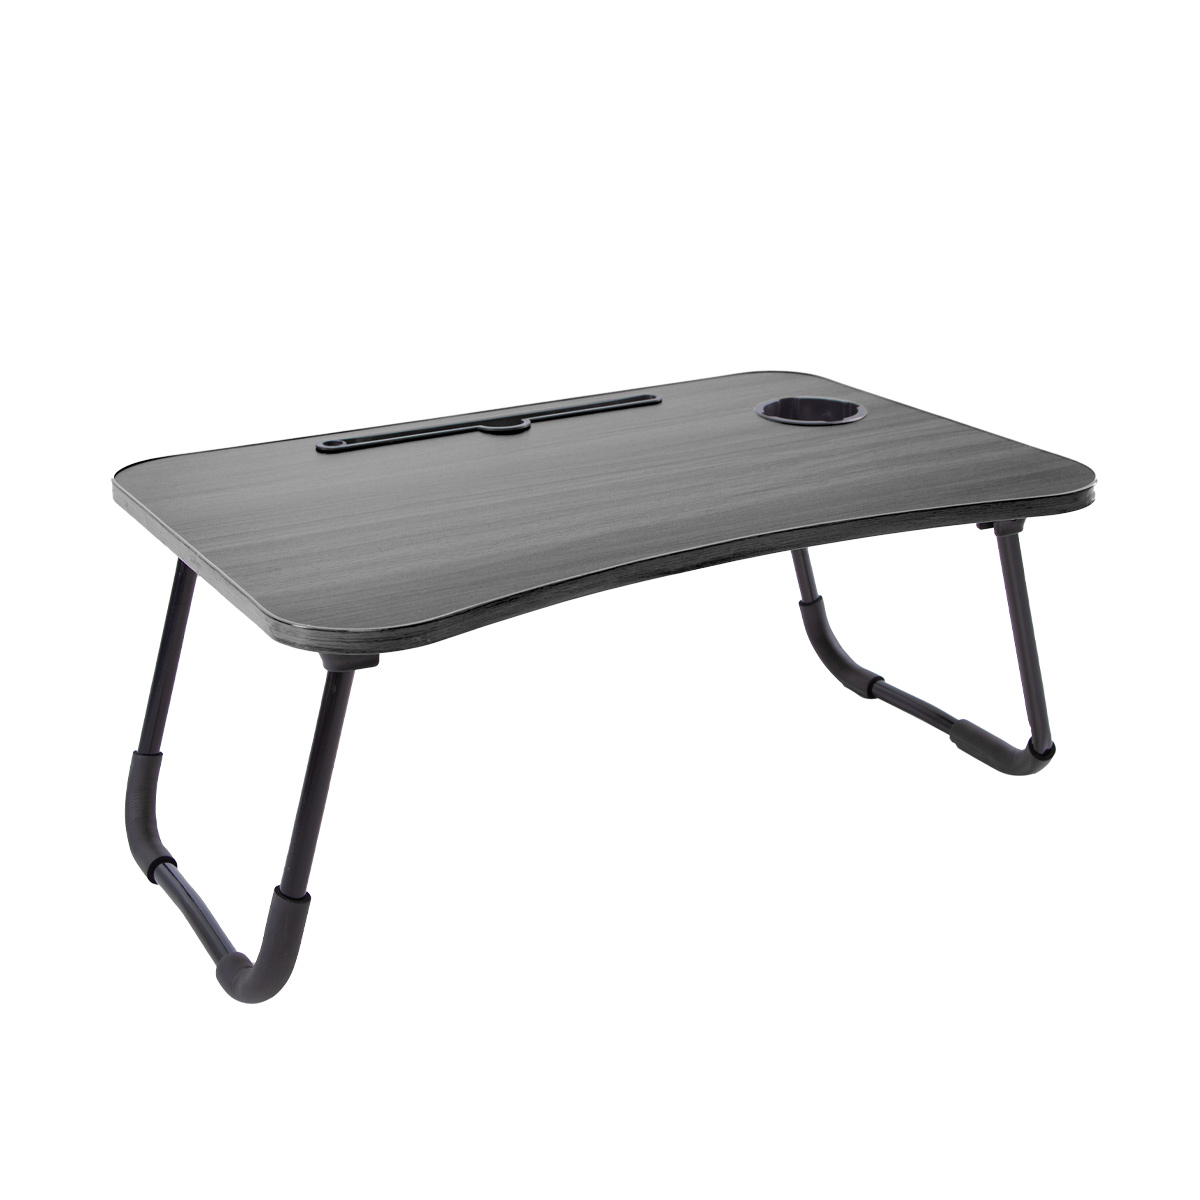 поднос столик для ноутбука со складными ножками 55 5×32 5×22 см бамбук Столик Domitti со складными ножками